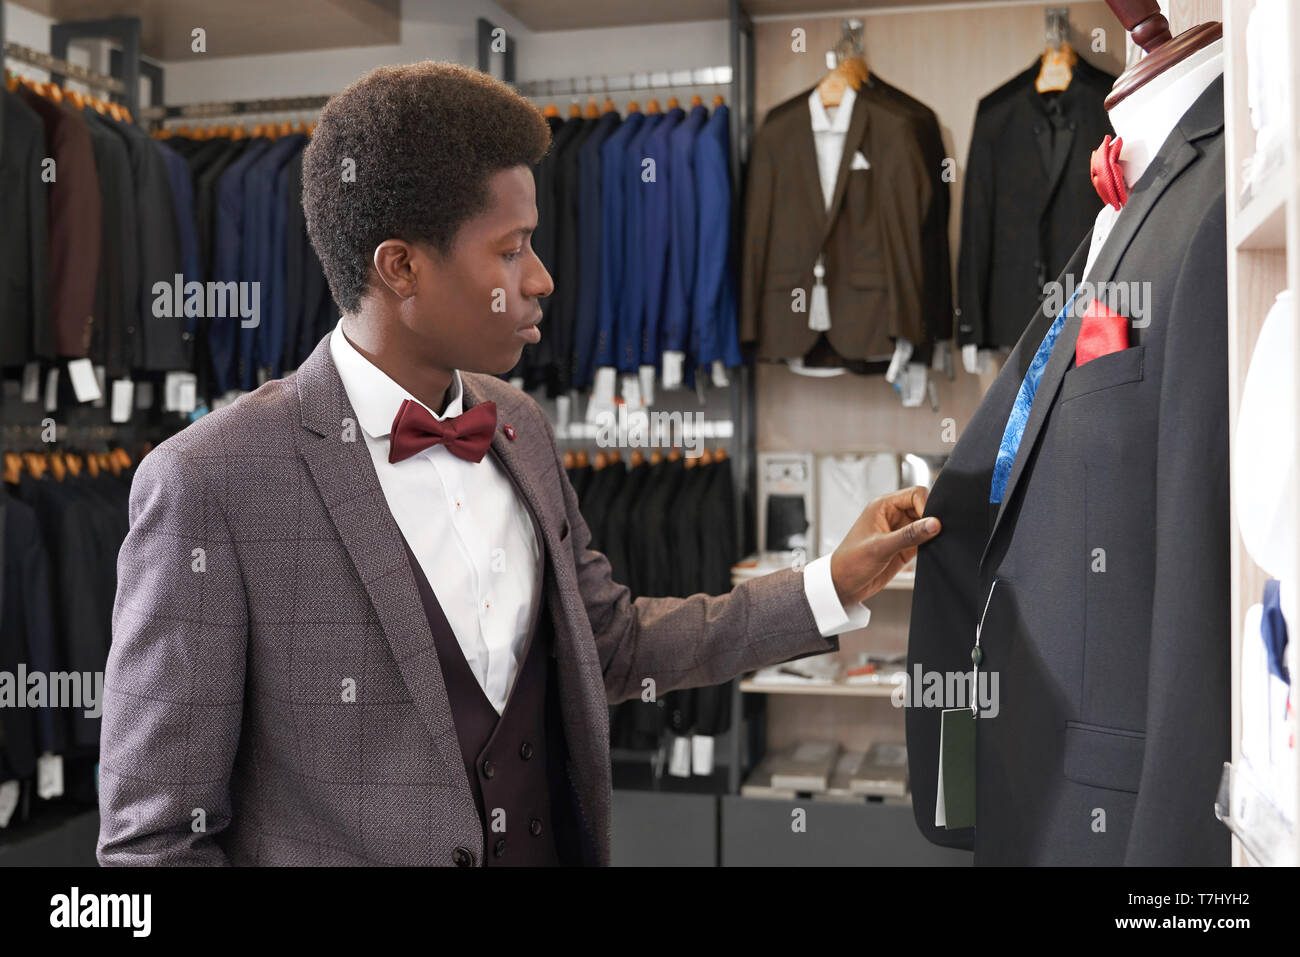 Junge afrikanische Mann in Boutique mit Kleidung für Männer in der Nähe von Mannequin, an der Jacke. Kunden Shop im weißen Hemd mit roter Schleife binden, schwarze, graue Jacke waiscoat Auswahl von eleganten Anzug. Stockfoto